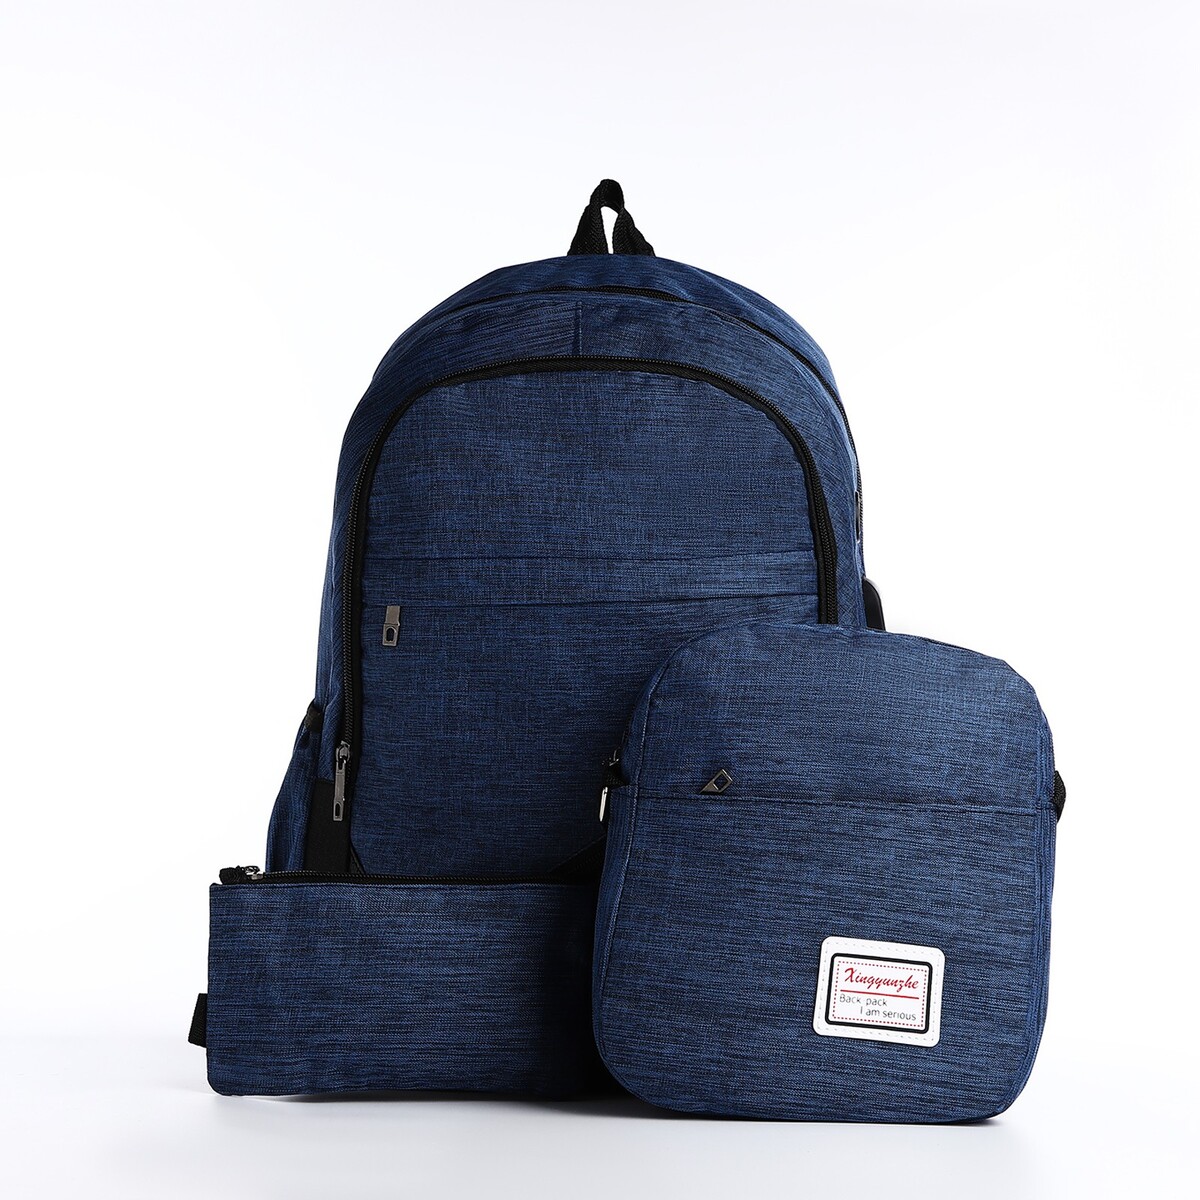 Рюкзак на молнии, с usb, 4 наружных кармана, сумка, пенал, цвет синий рюкзак на молнии 2 наружных кармана синий